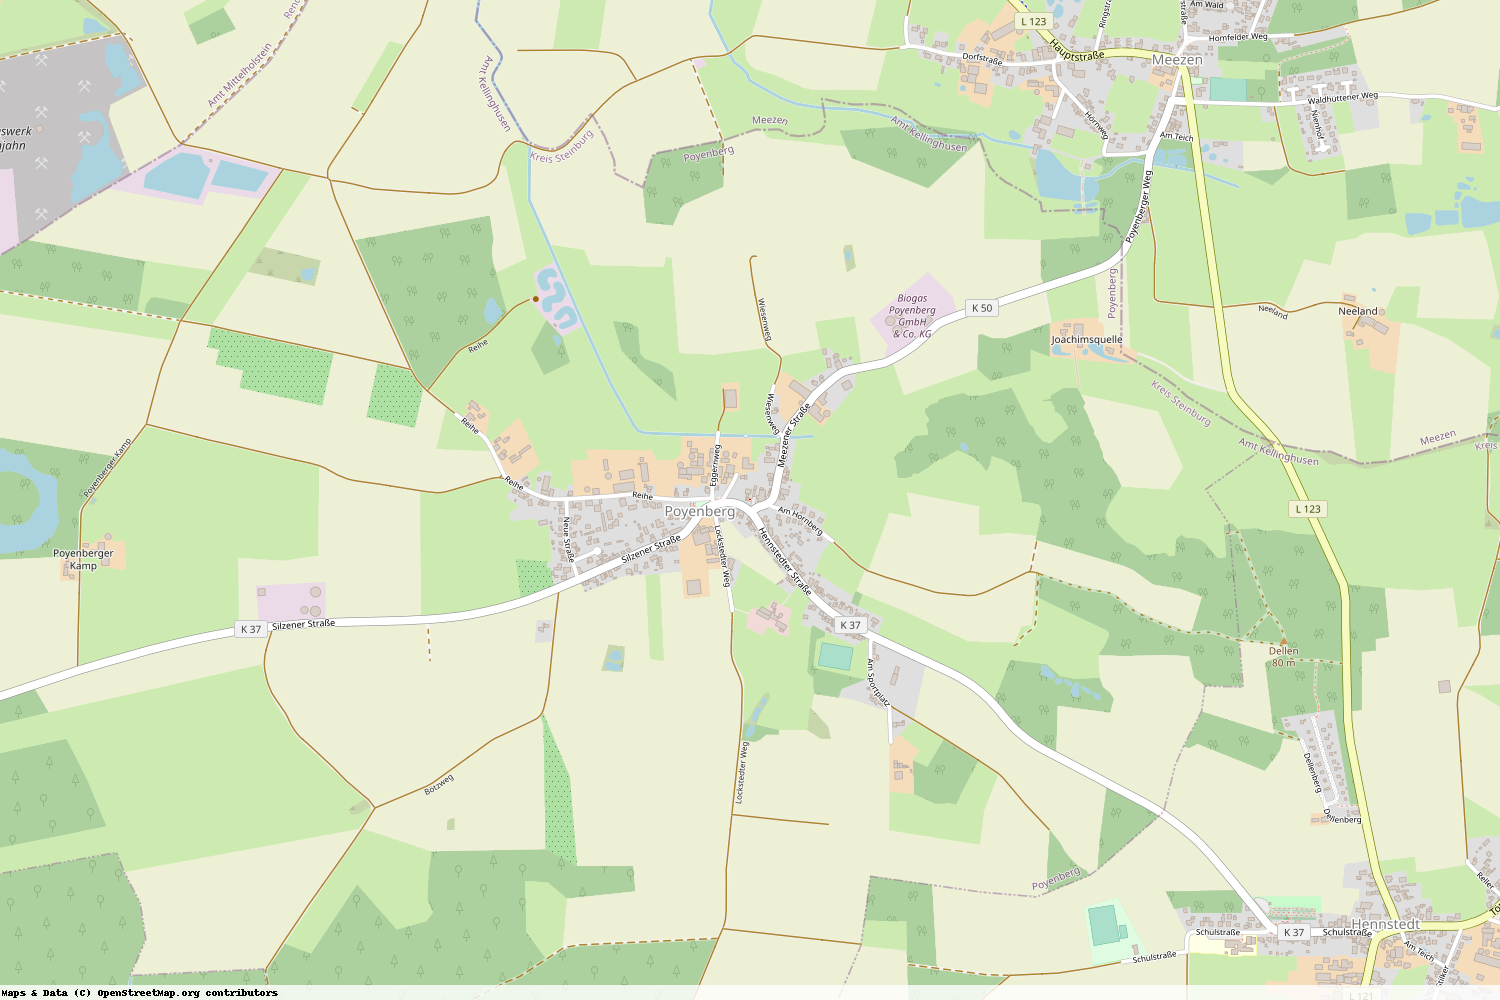 Ist gerade Stromausfall in Schleswig-Holstein - Steinburg - Poyenberg?